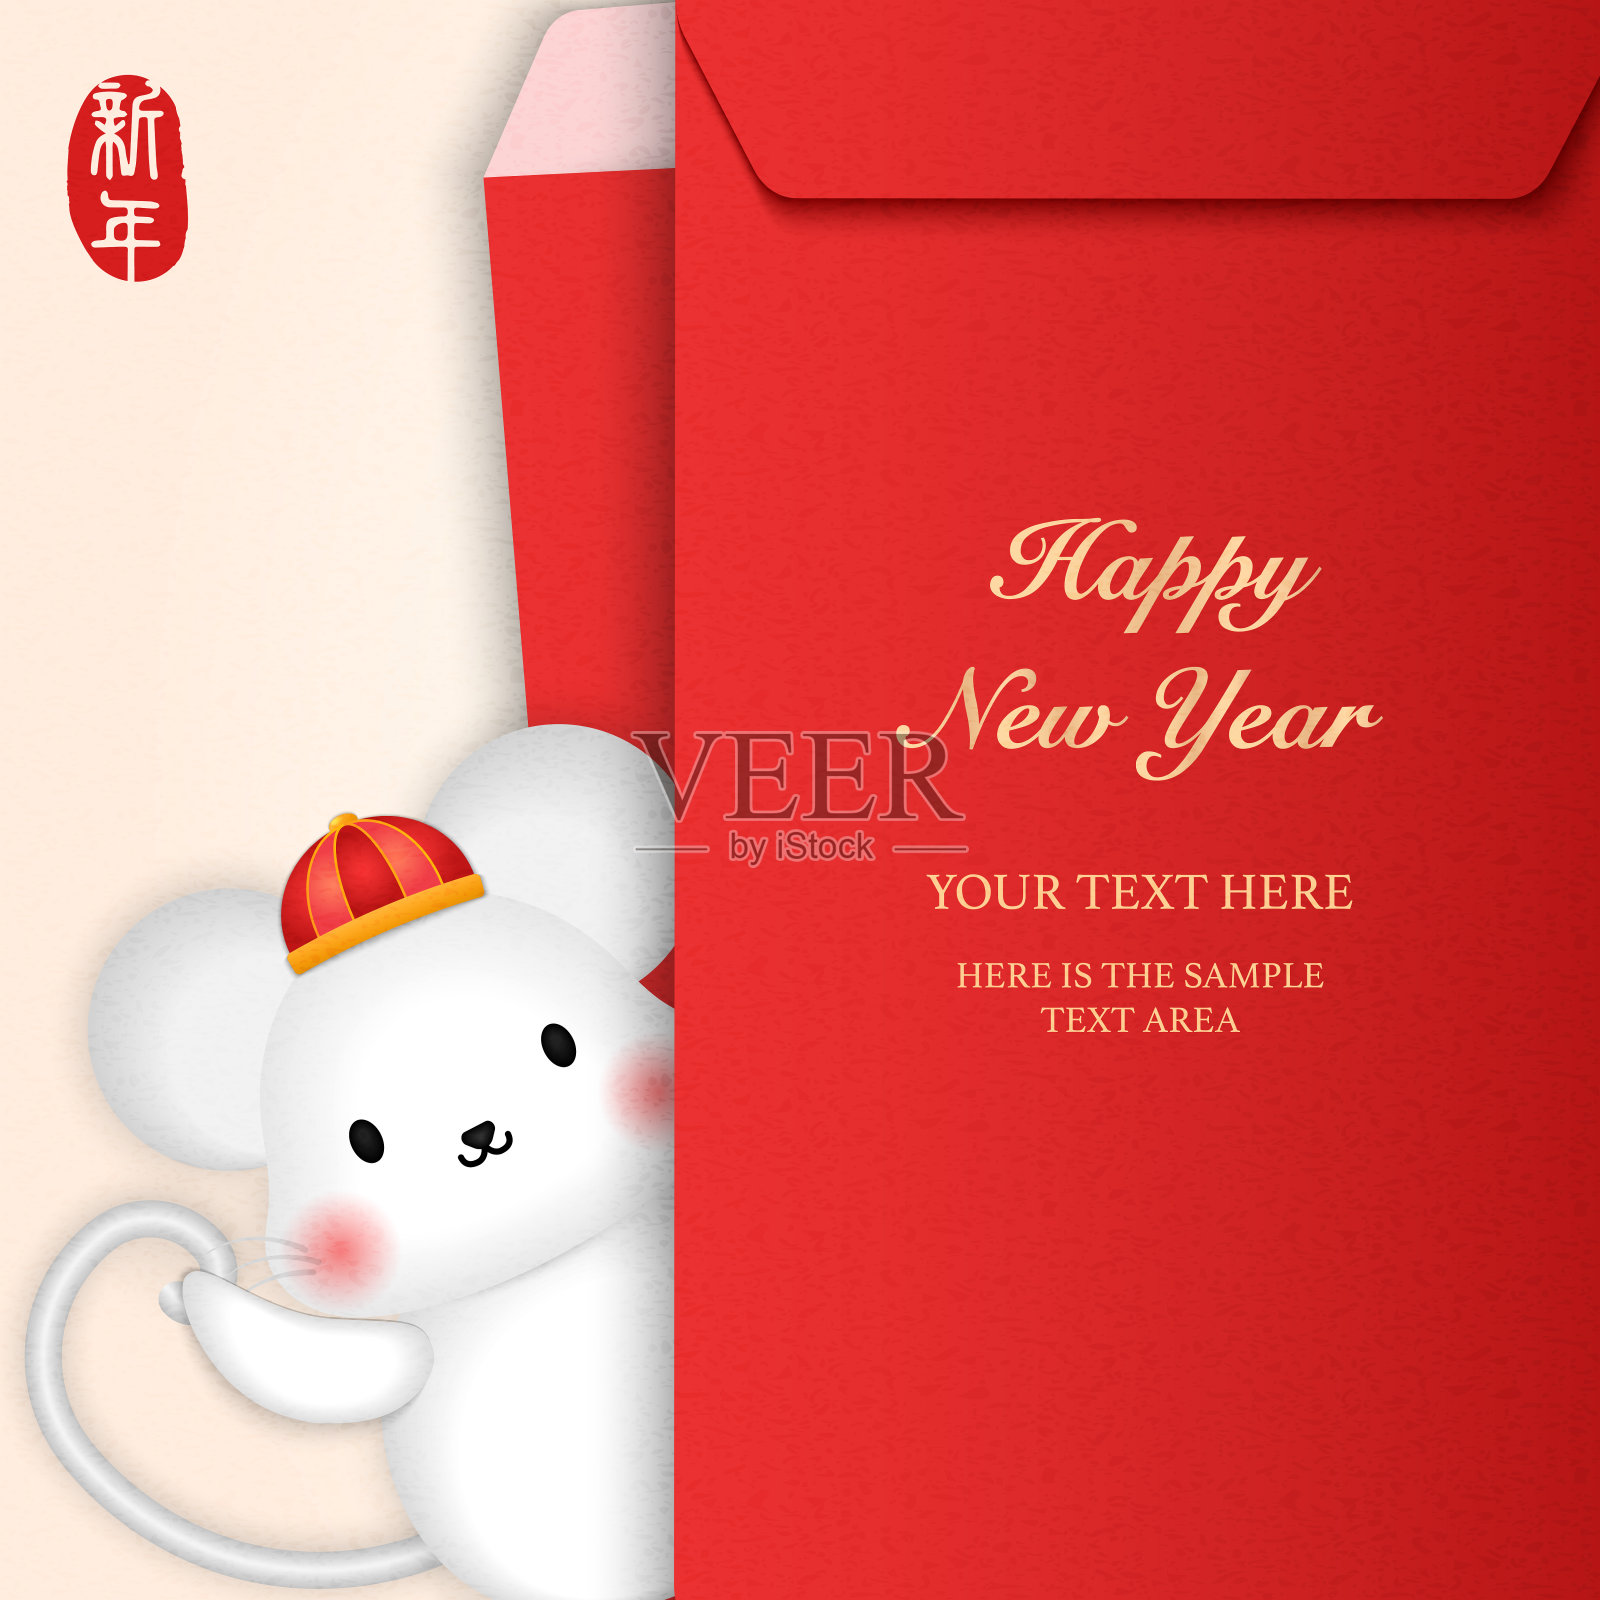 2020快乐春节卡通可爱老鼠和红包模板。中文翻译:新年。设计模板素材